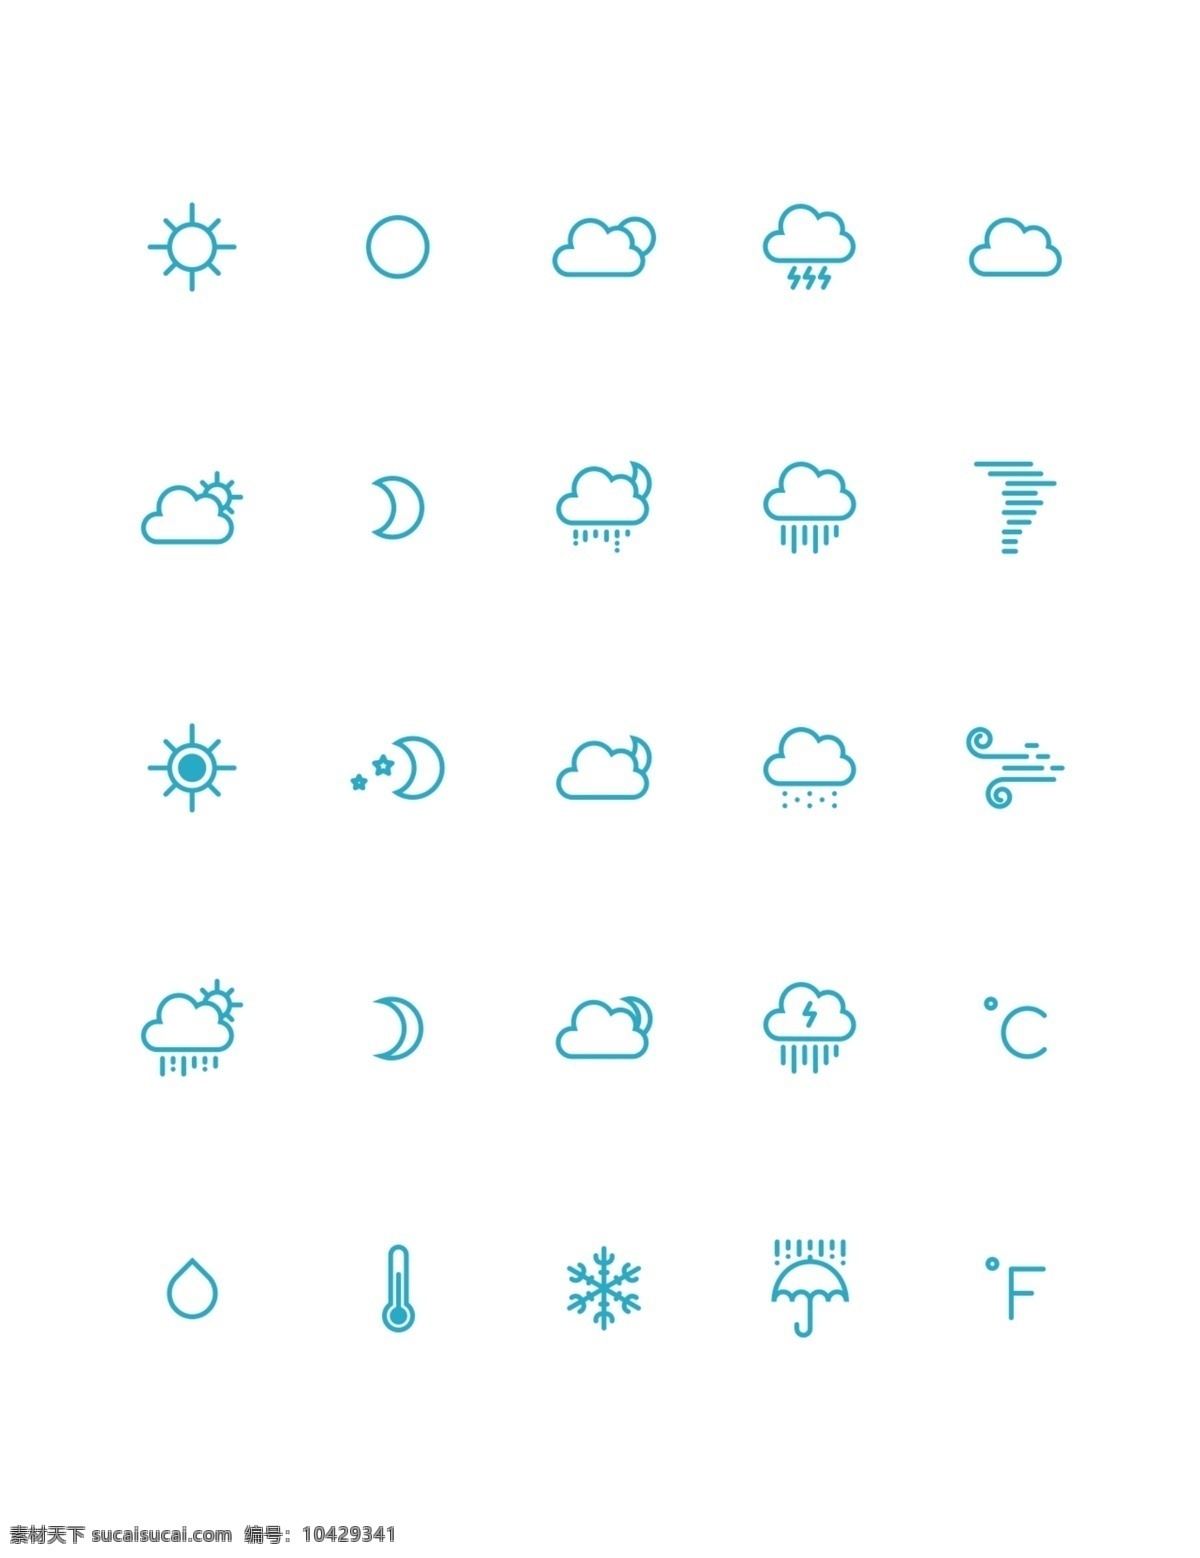 天气图标 icon ui 按钮 标识 青色 天蓝色